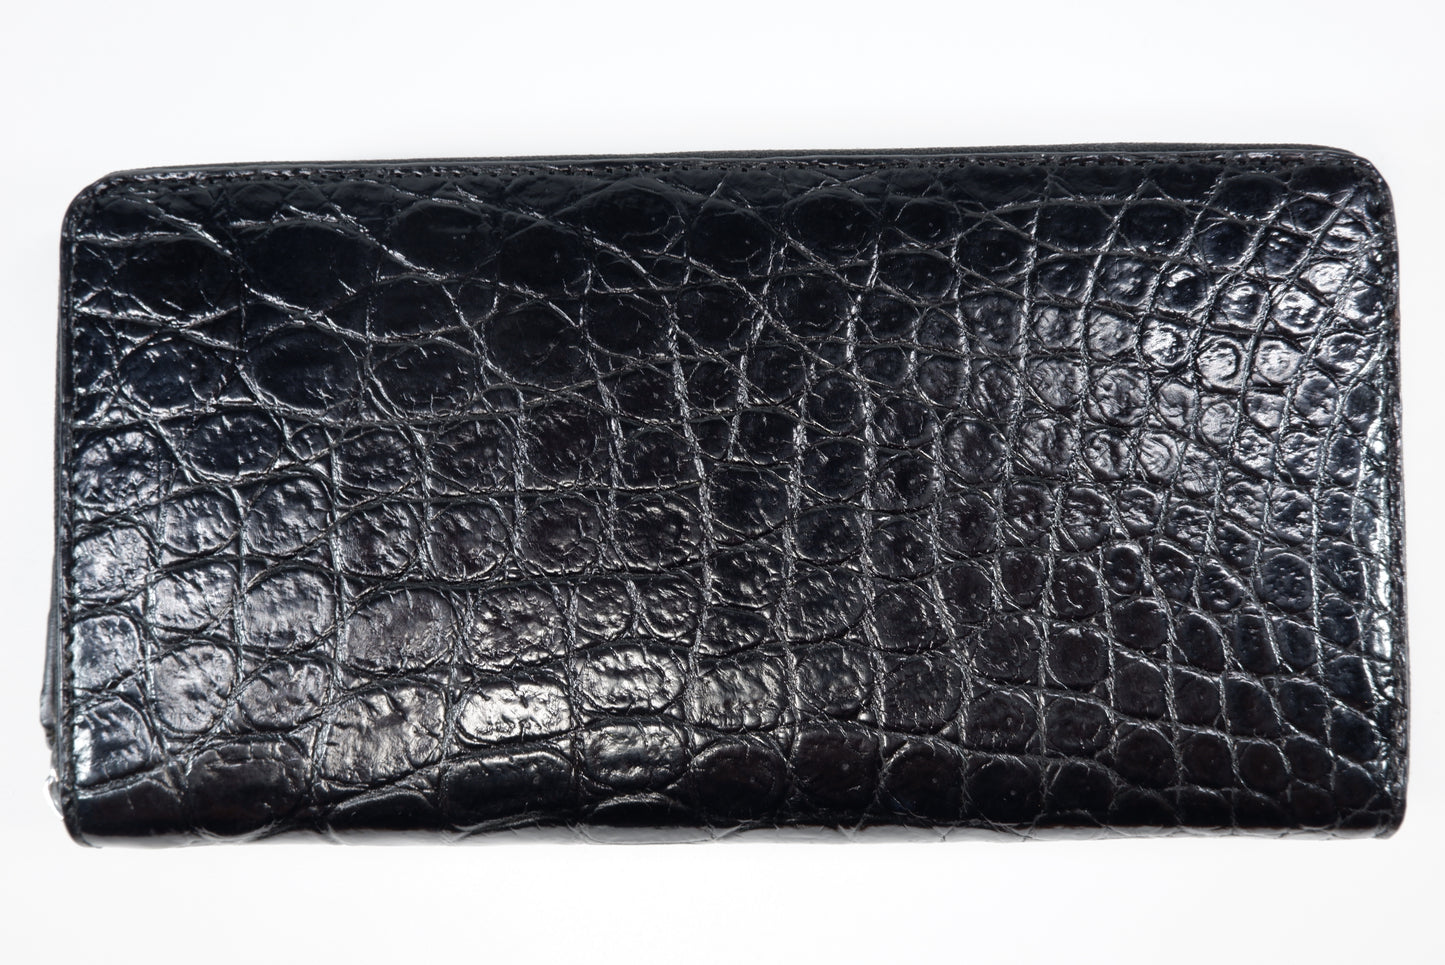 Genuine Crocodile Belly Skin Leather Zip Around Clutch Wallet Purse